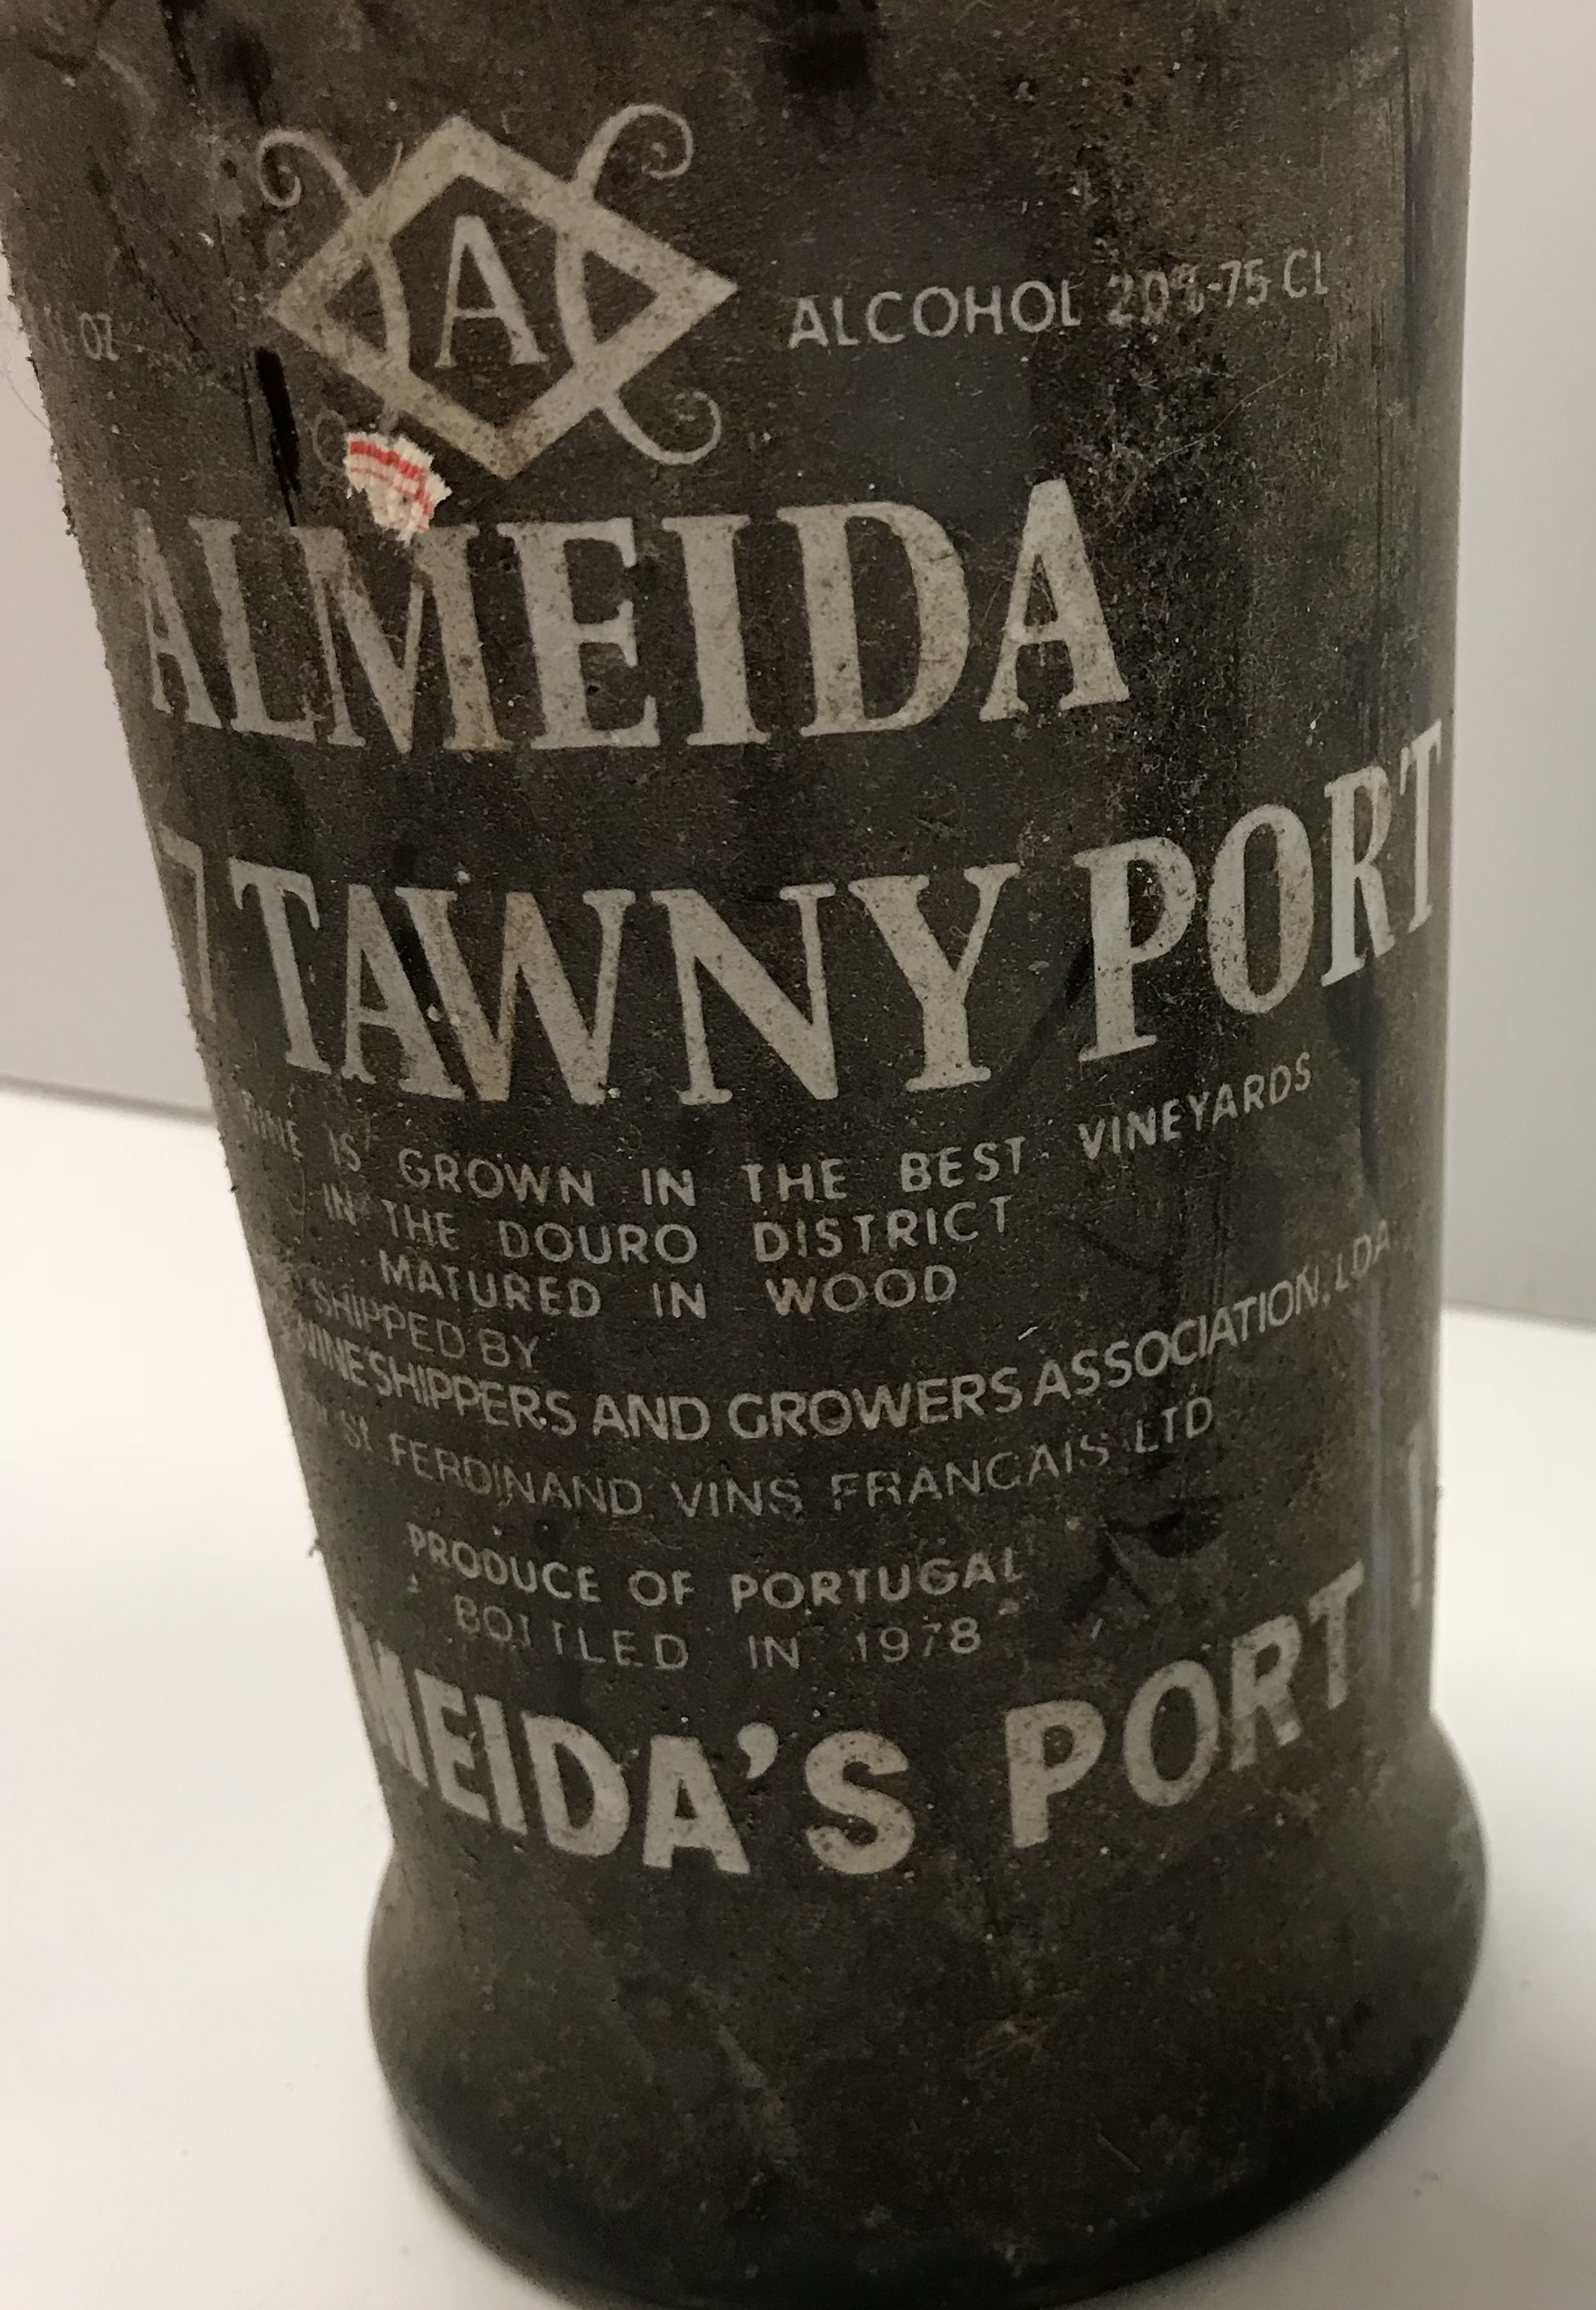 One bottle Almeida tawny port 1967 and two bottles Niepoort late bottled vintage port 1999, - Image 3 of 4